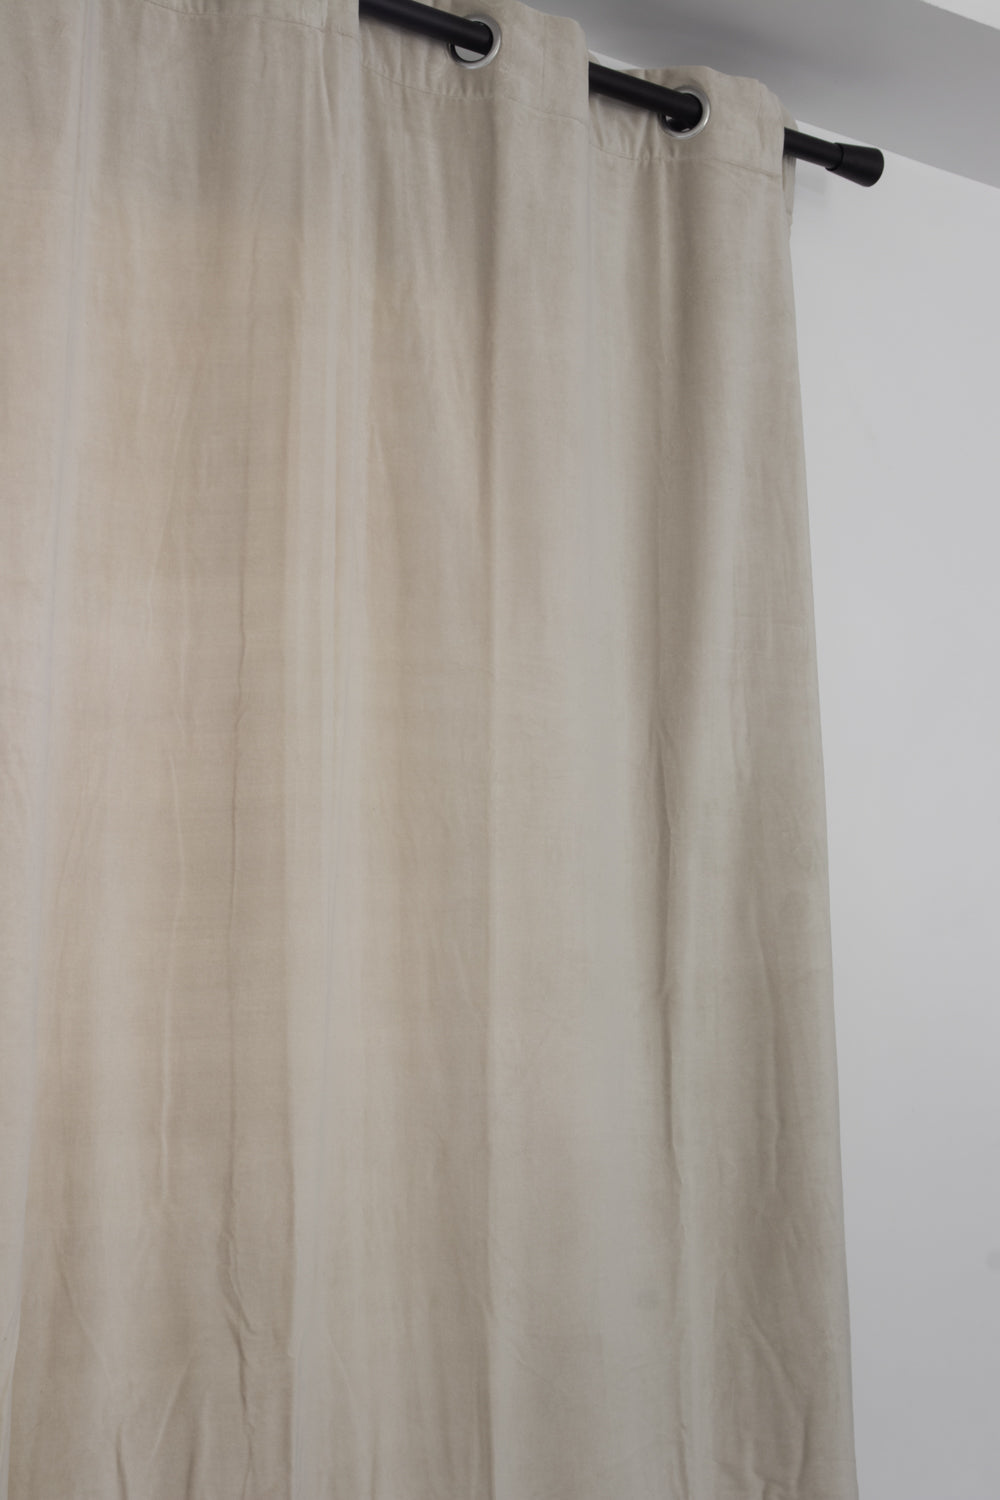 Rideaux en velours de coton doublés Elise 140x280 cm - Vivaraise, Grege